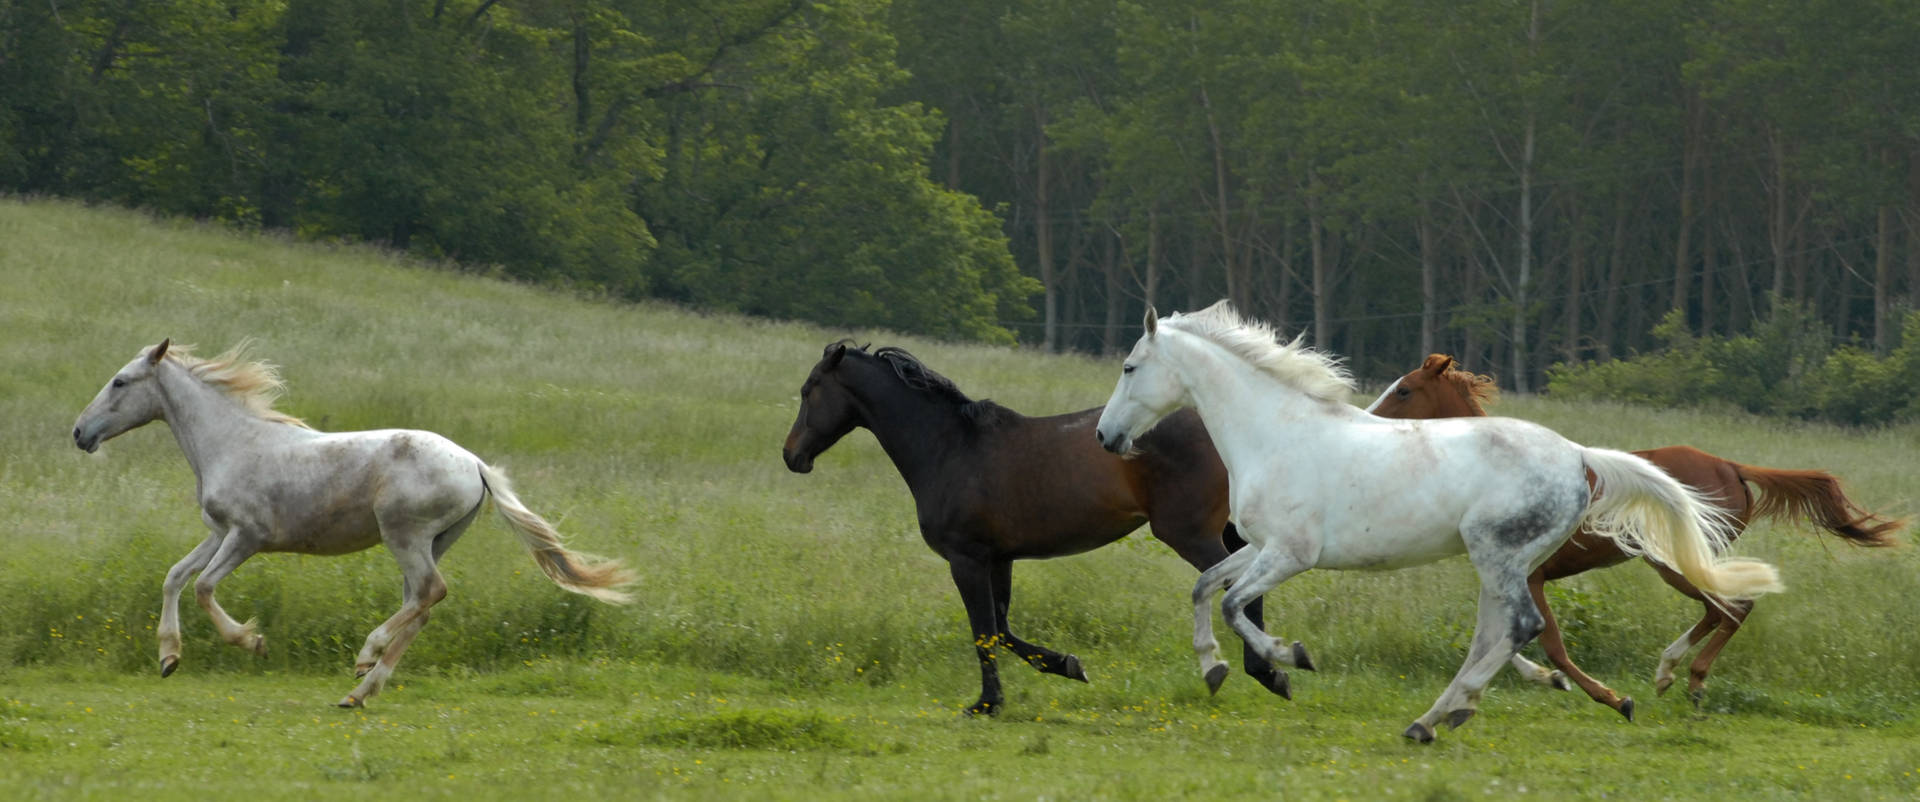 Beautiful Horses Running Free Outdoors Wallpaper